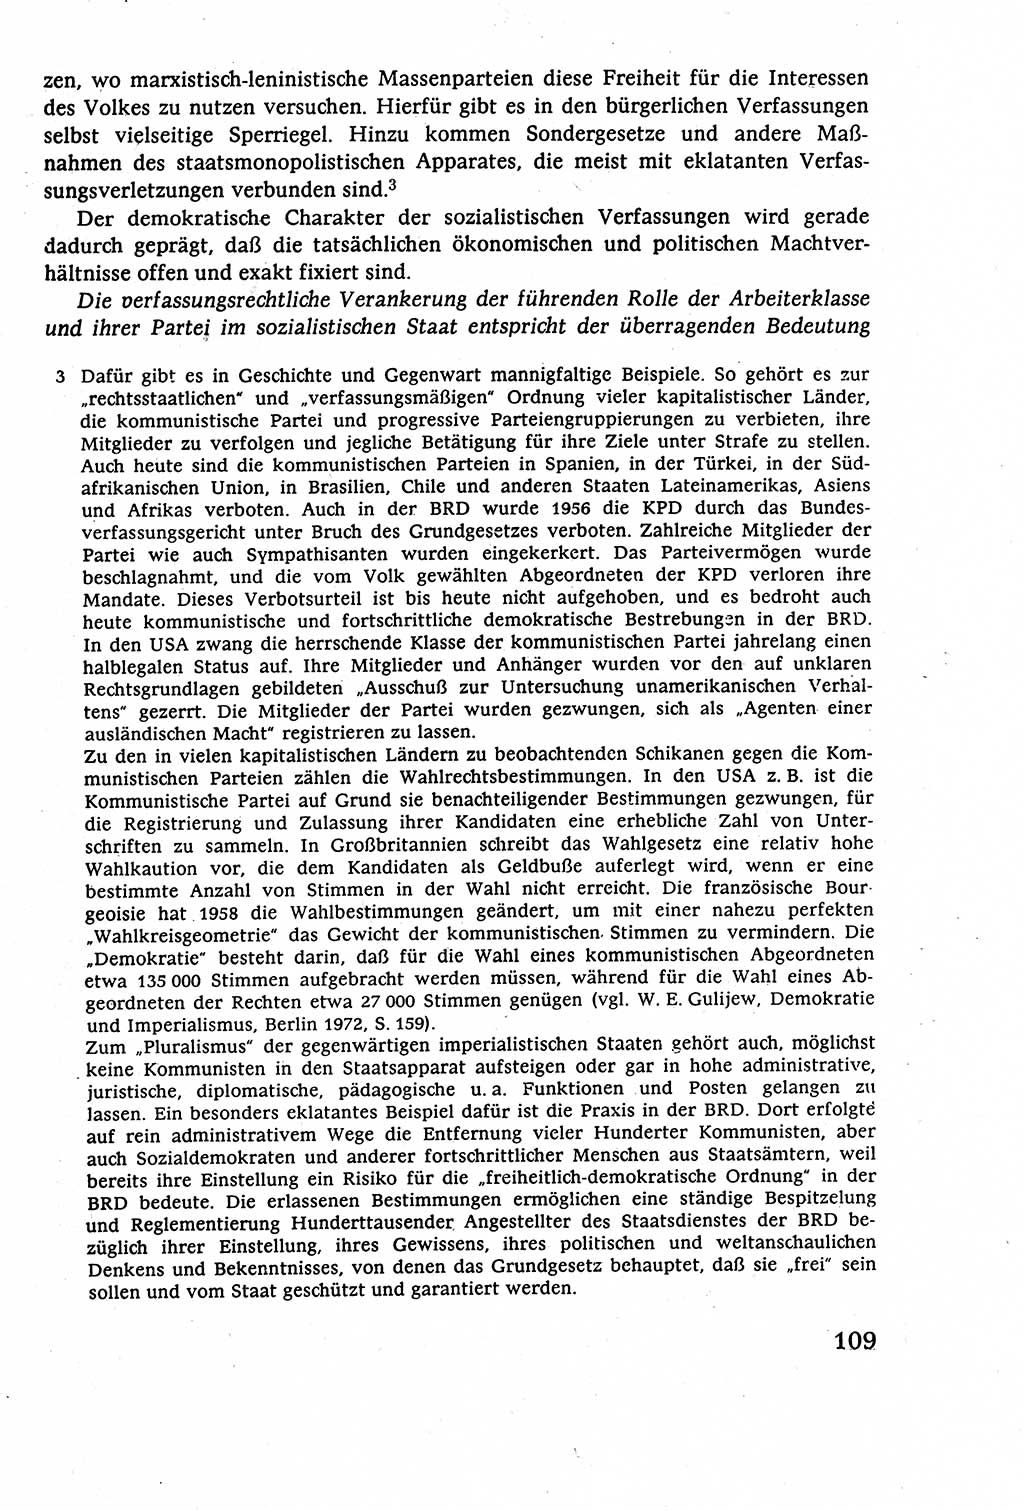 Staatsrecht der DDR (Deutsche Demokratische Republik), Lehrbuch 1977, Seite 109 (St.-R. DDR Lb. 1977, S. 109)